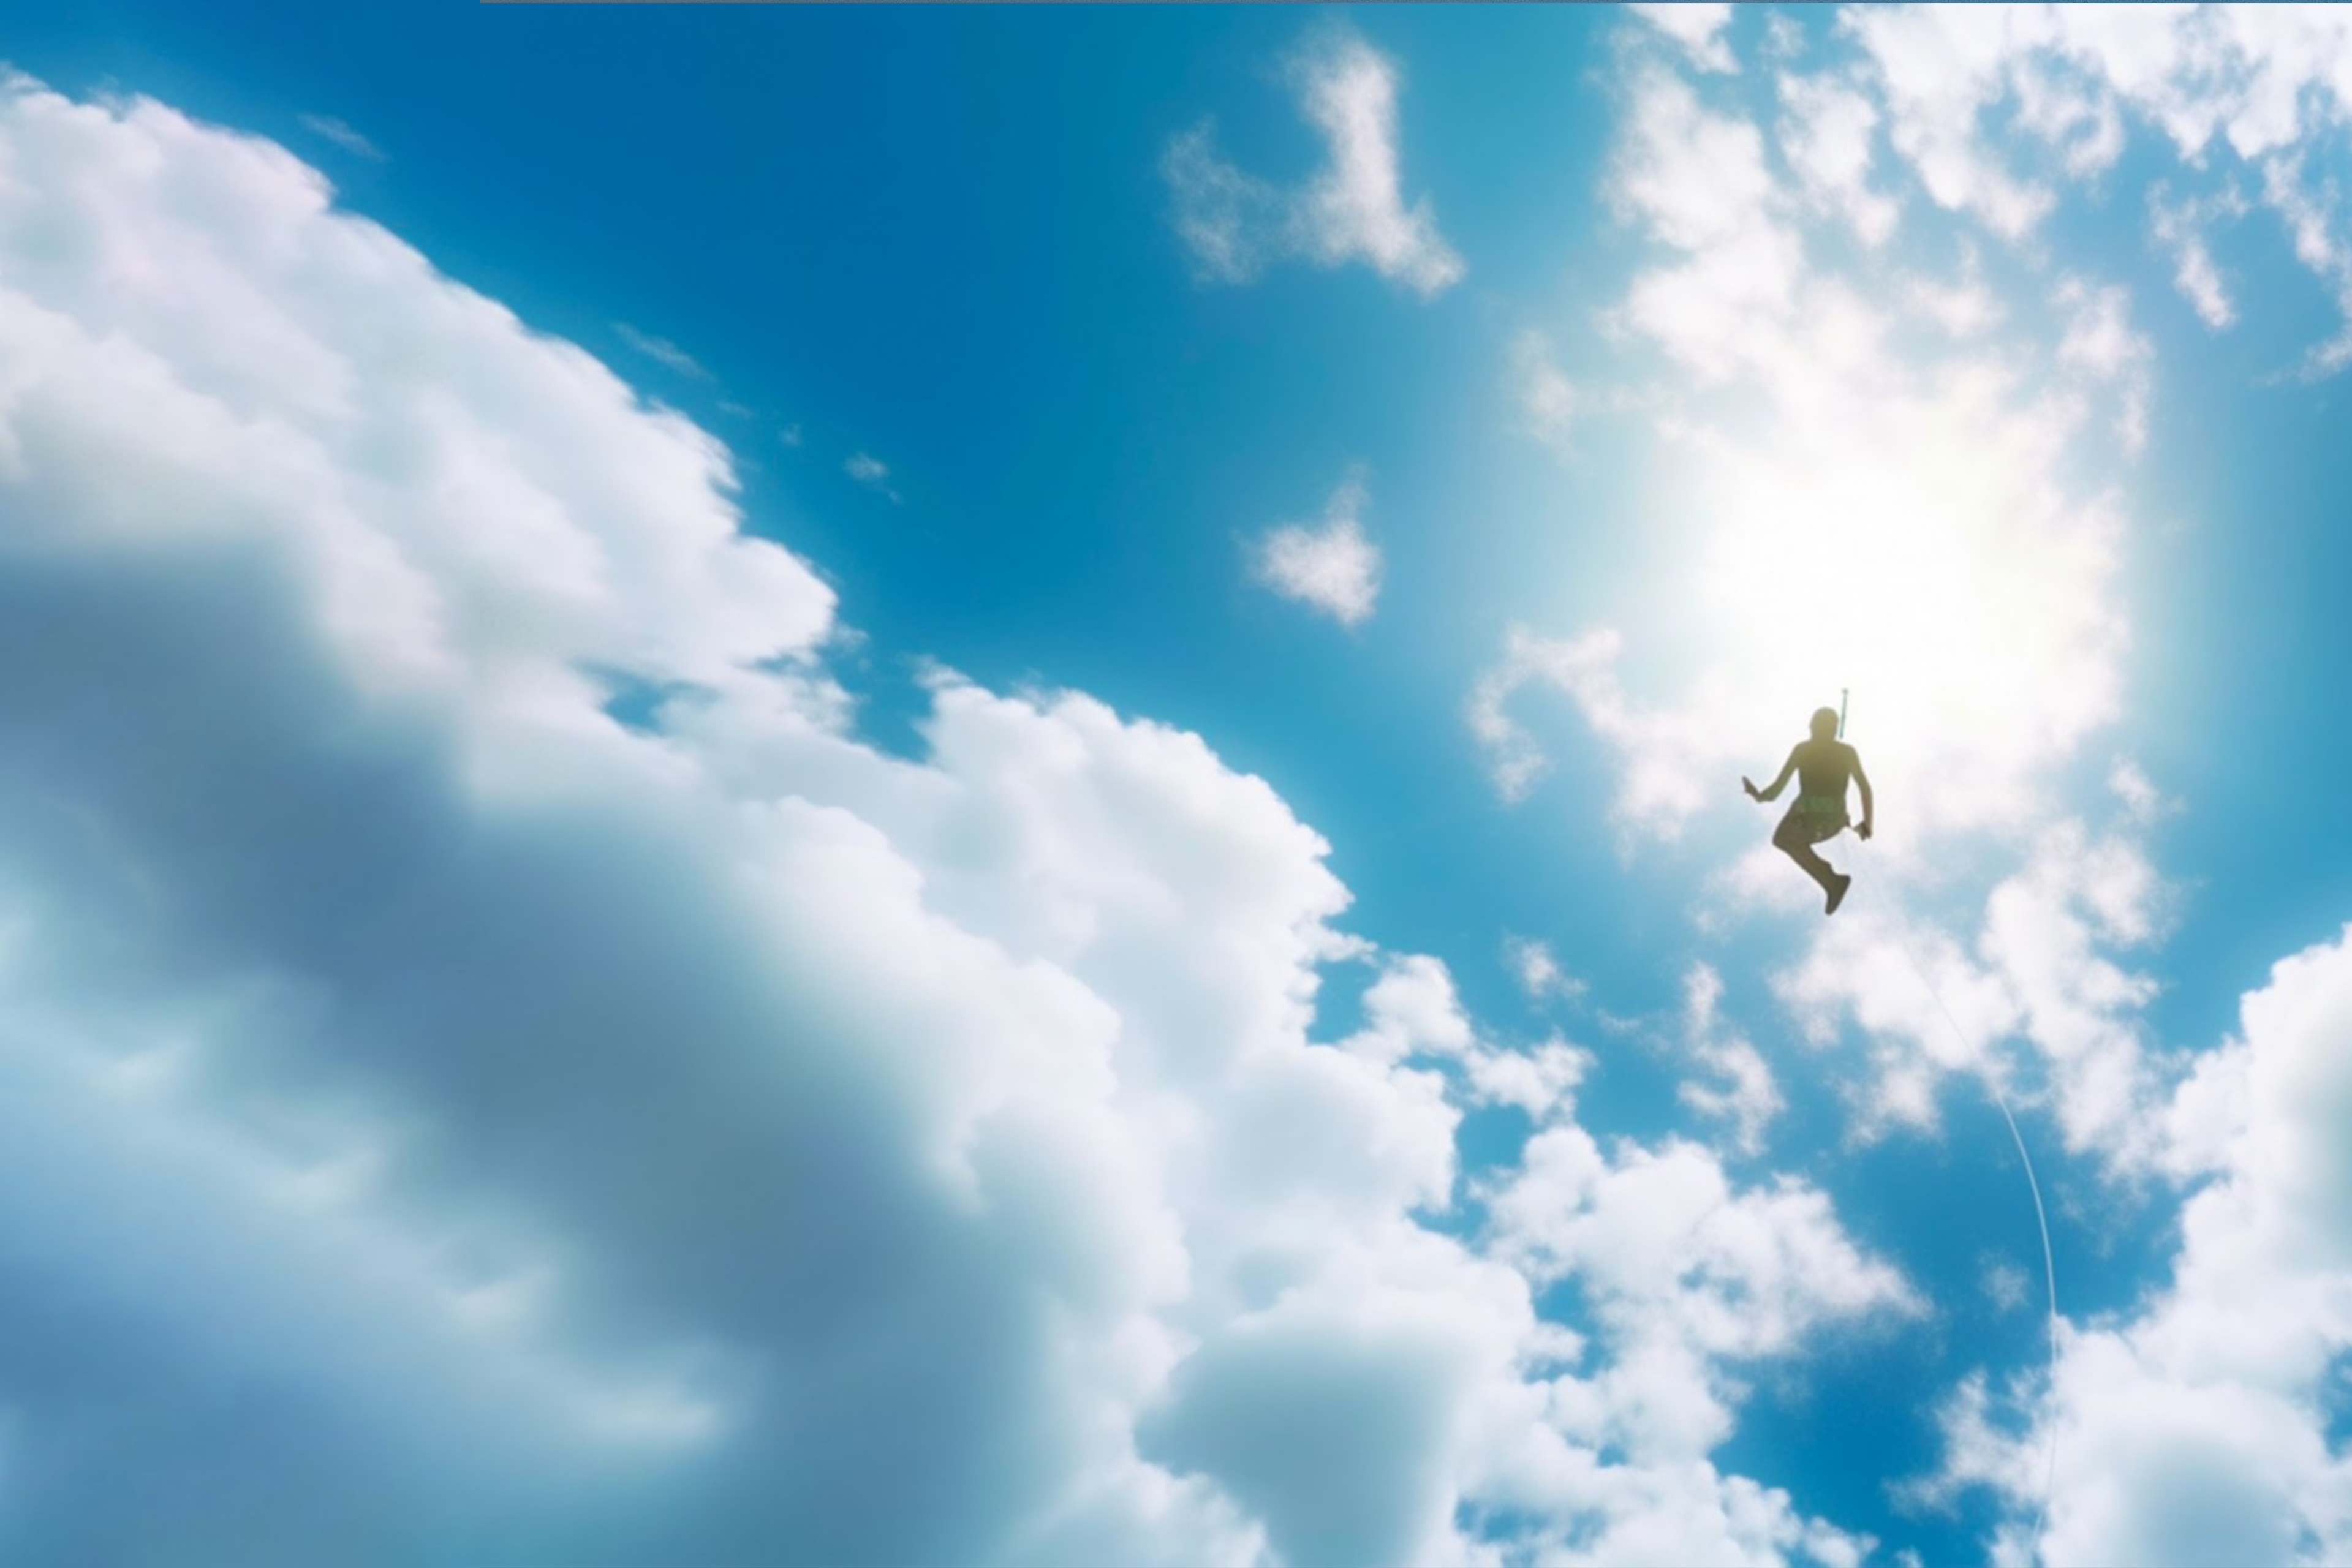 Una persona controluce fluttua in un cielo azzurro, ha una imbracatura che sembra portare ad un paracadute, ma il paracadute non c'è. Al suo posto, ci sono delle nuvole. Nell'immagine compaiono i loghi delle due società.